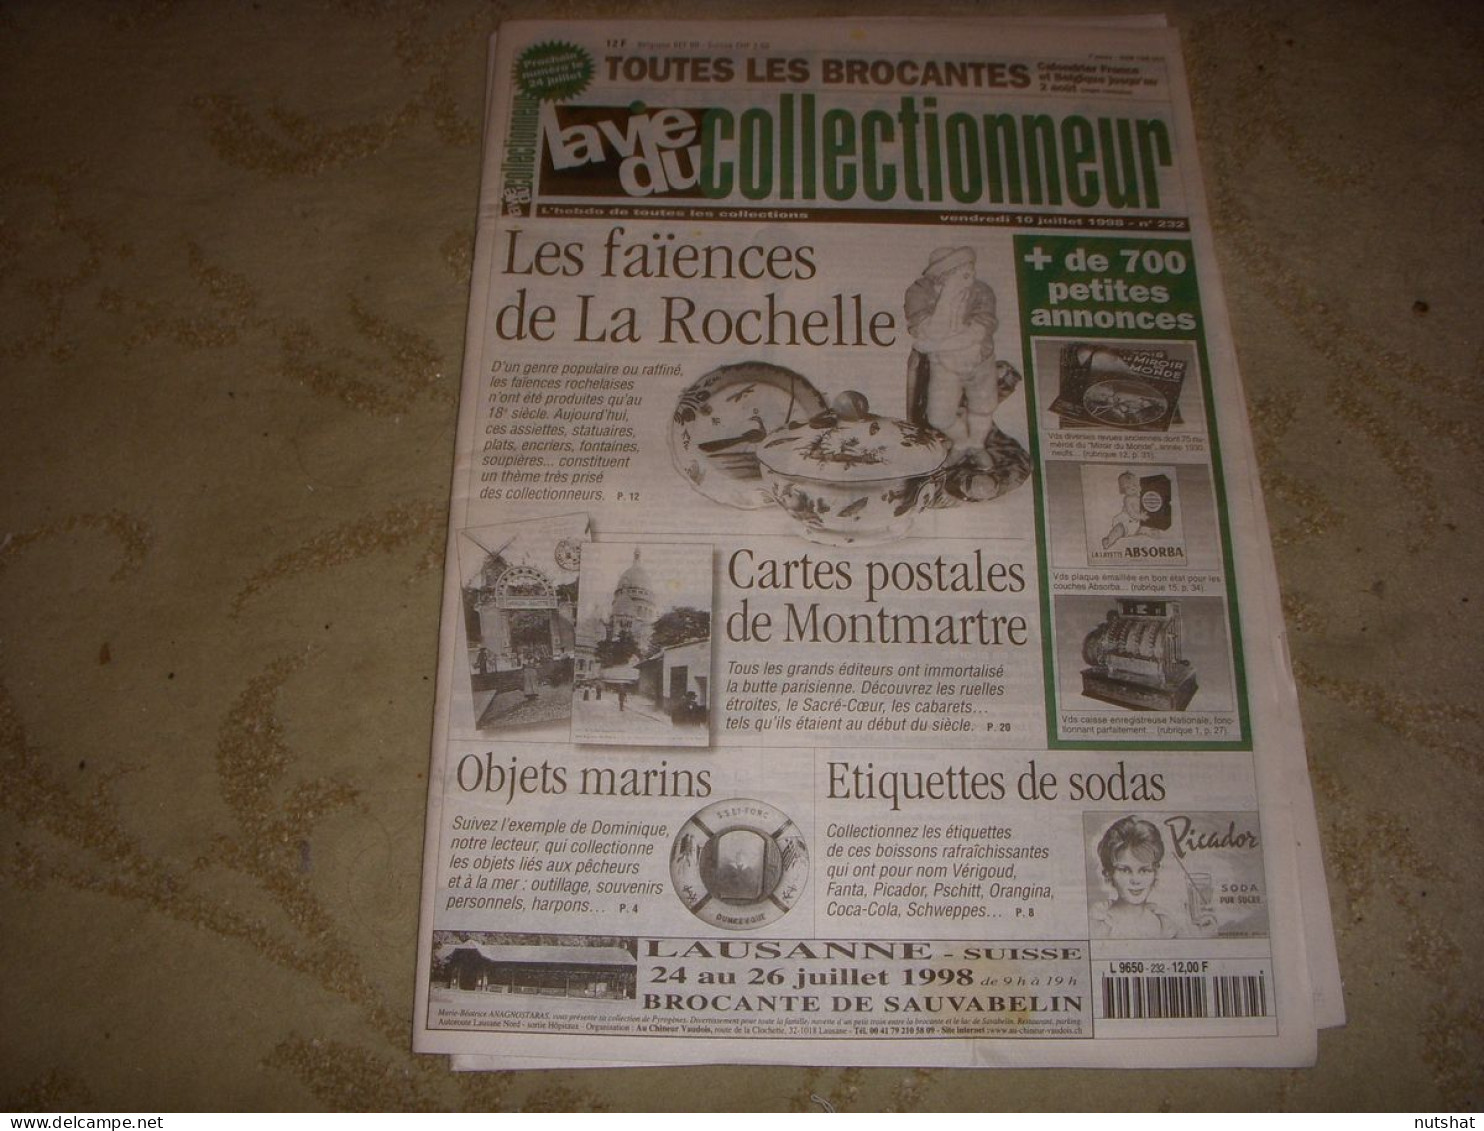 LVC VIE Du COLLECTIONNEUR 232 10.07.1998 FAIENCES LA ROCHELLE ETIQUETTE SODA  - Brocantes & Collections